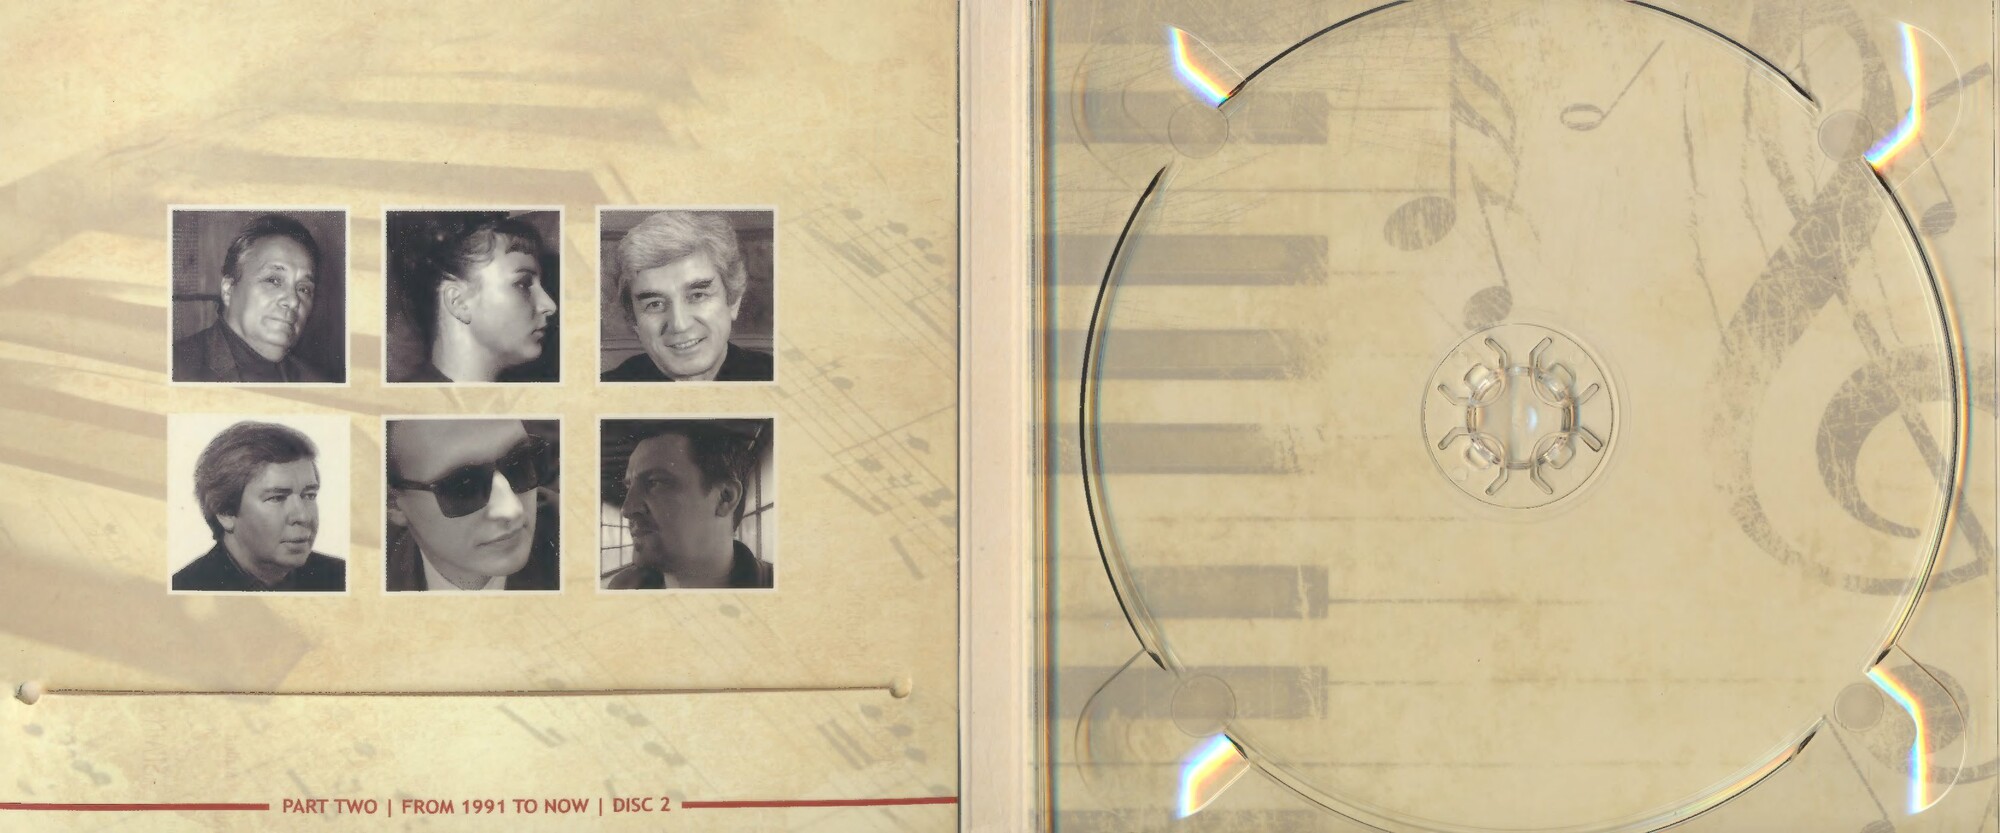 Антология фортепианной музыки русских и советских композиторов. Часть 2 (1991— н.в.) диск 2 (7)